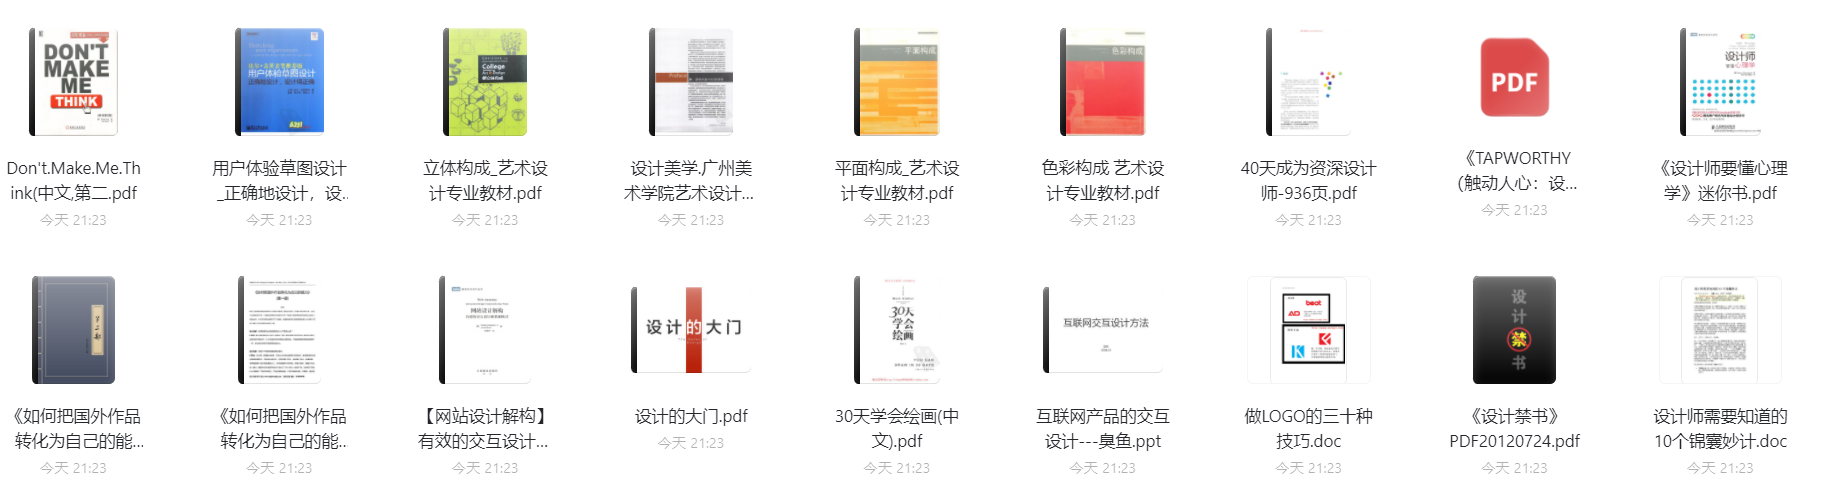 【1.21寒假每日福利】UI设计书籍18本-电子图书馆社区-电子图书-FancyPig's blog